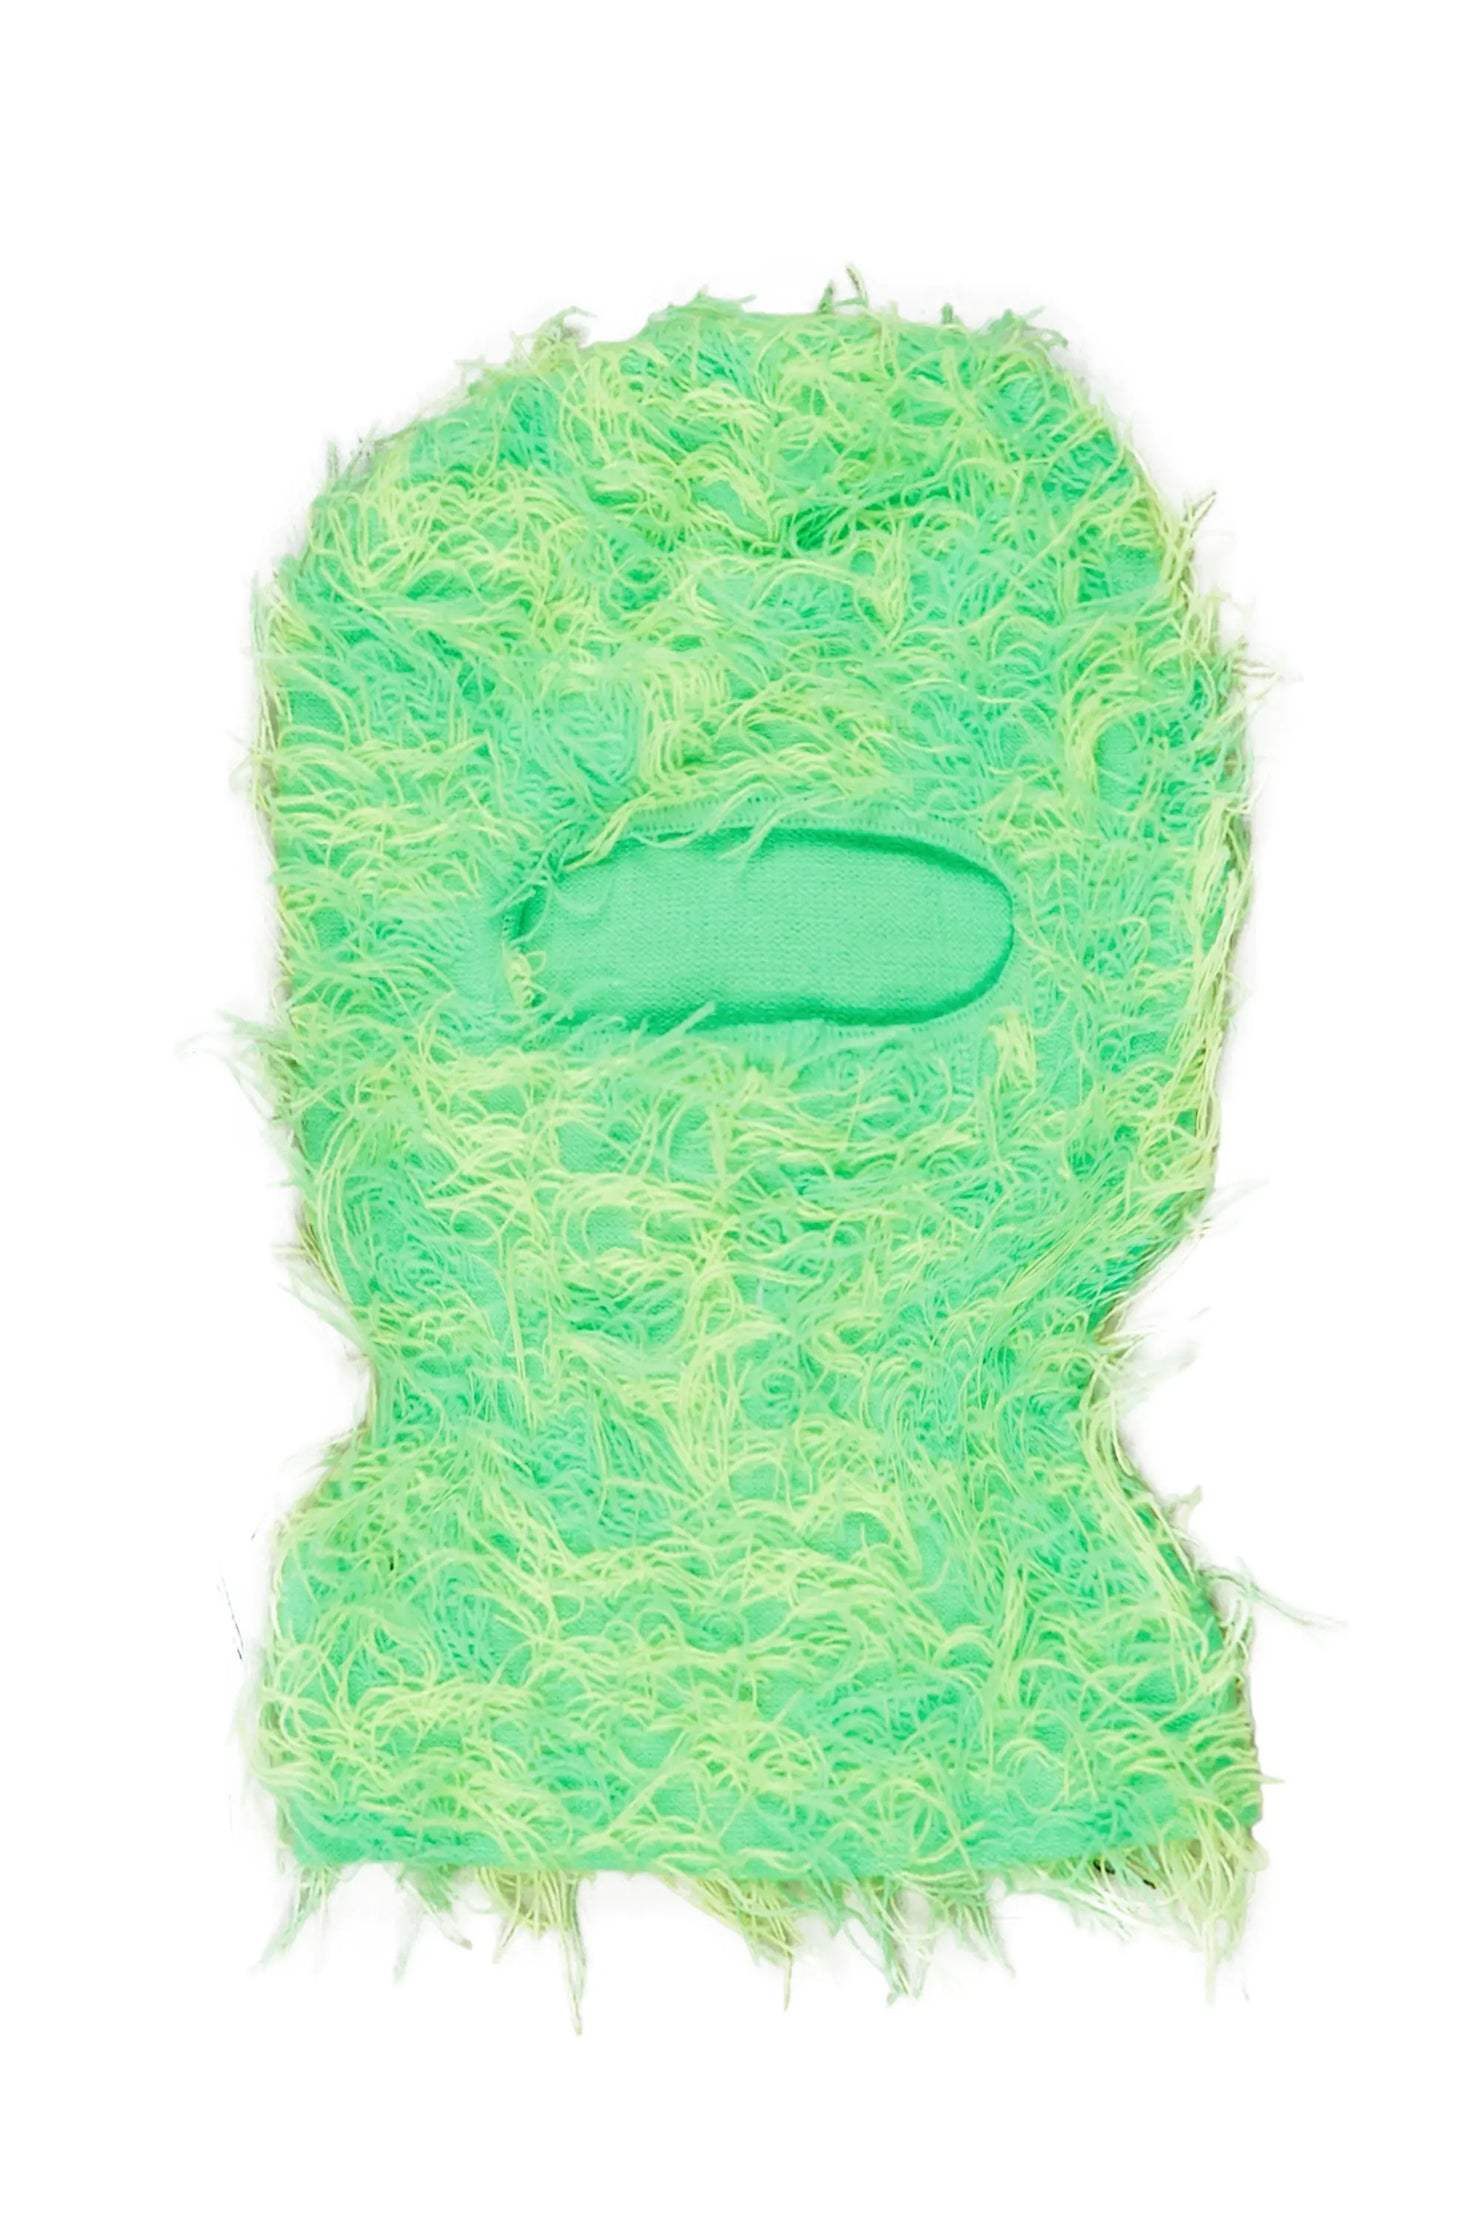 Seantee Neon Green Fuzzy Ski Mask